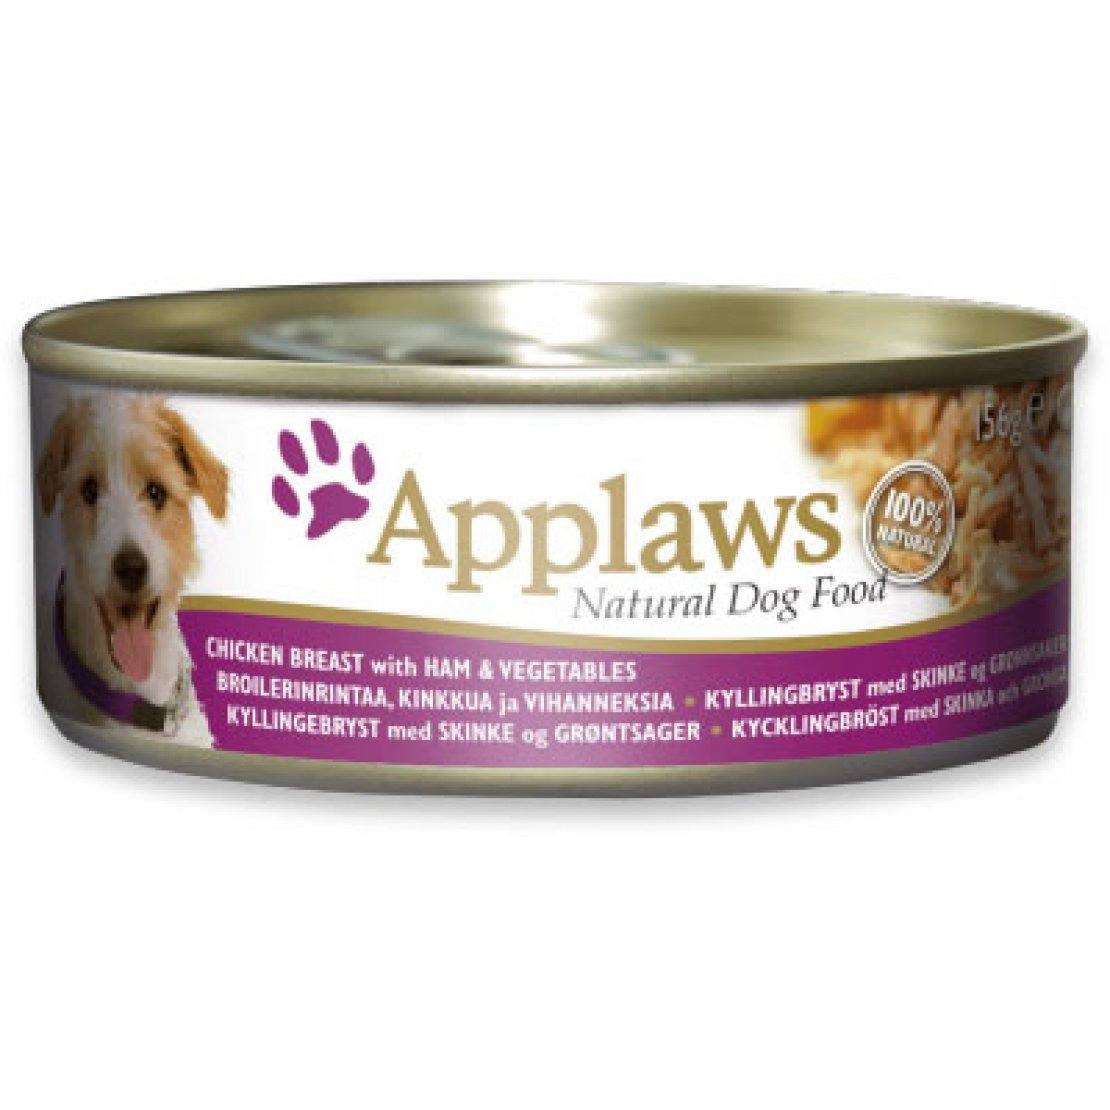 Applaws Natural Chicken Breast & Ham Dog Food VioVet.co.uk